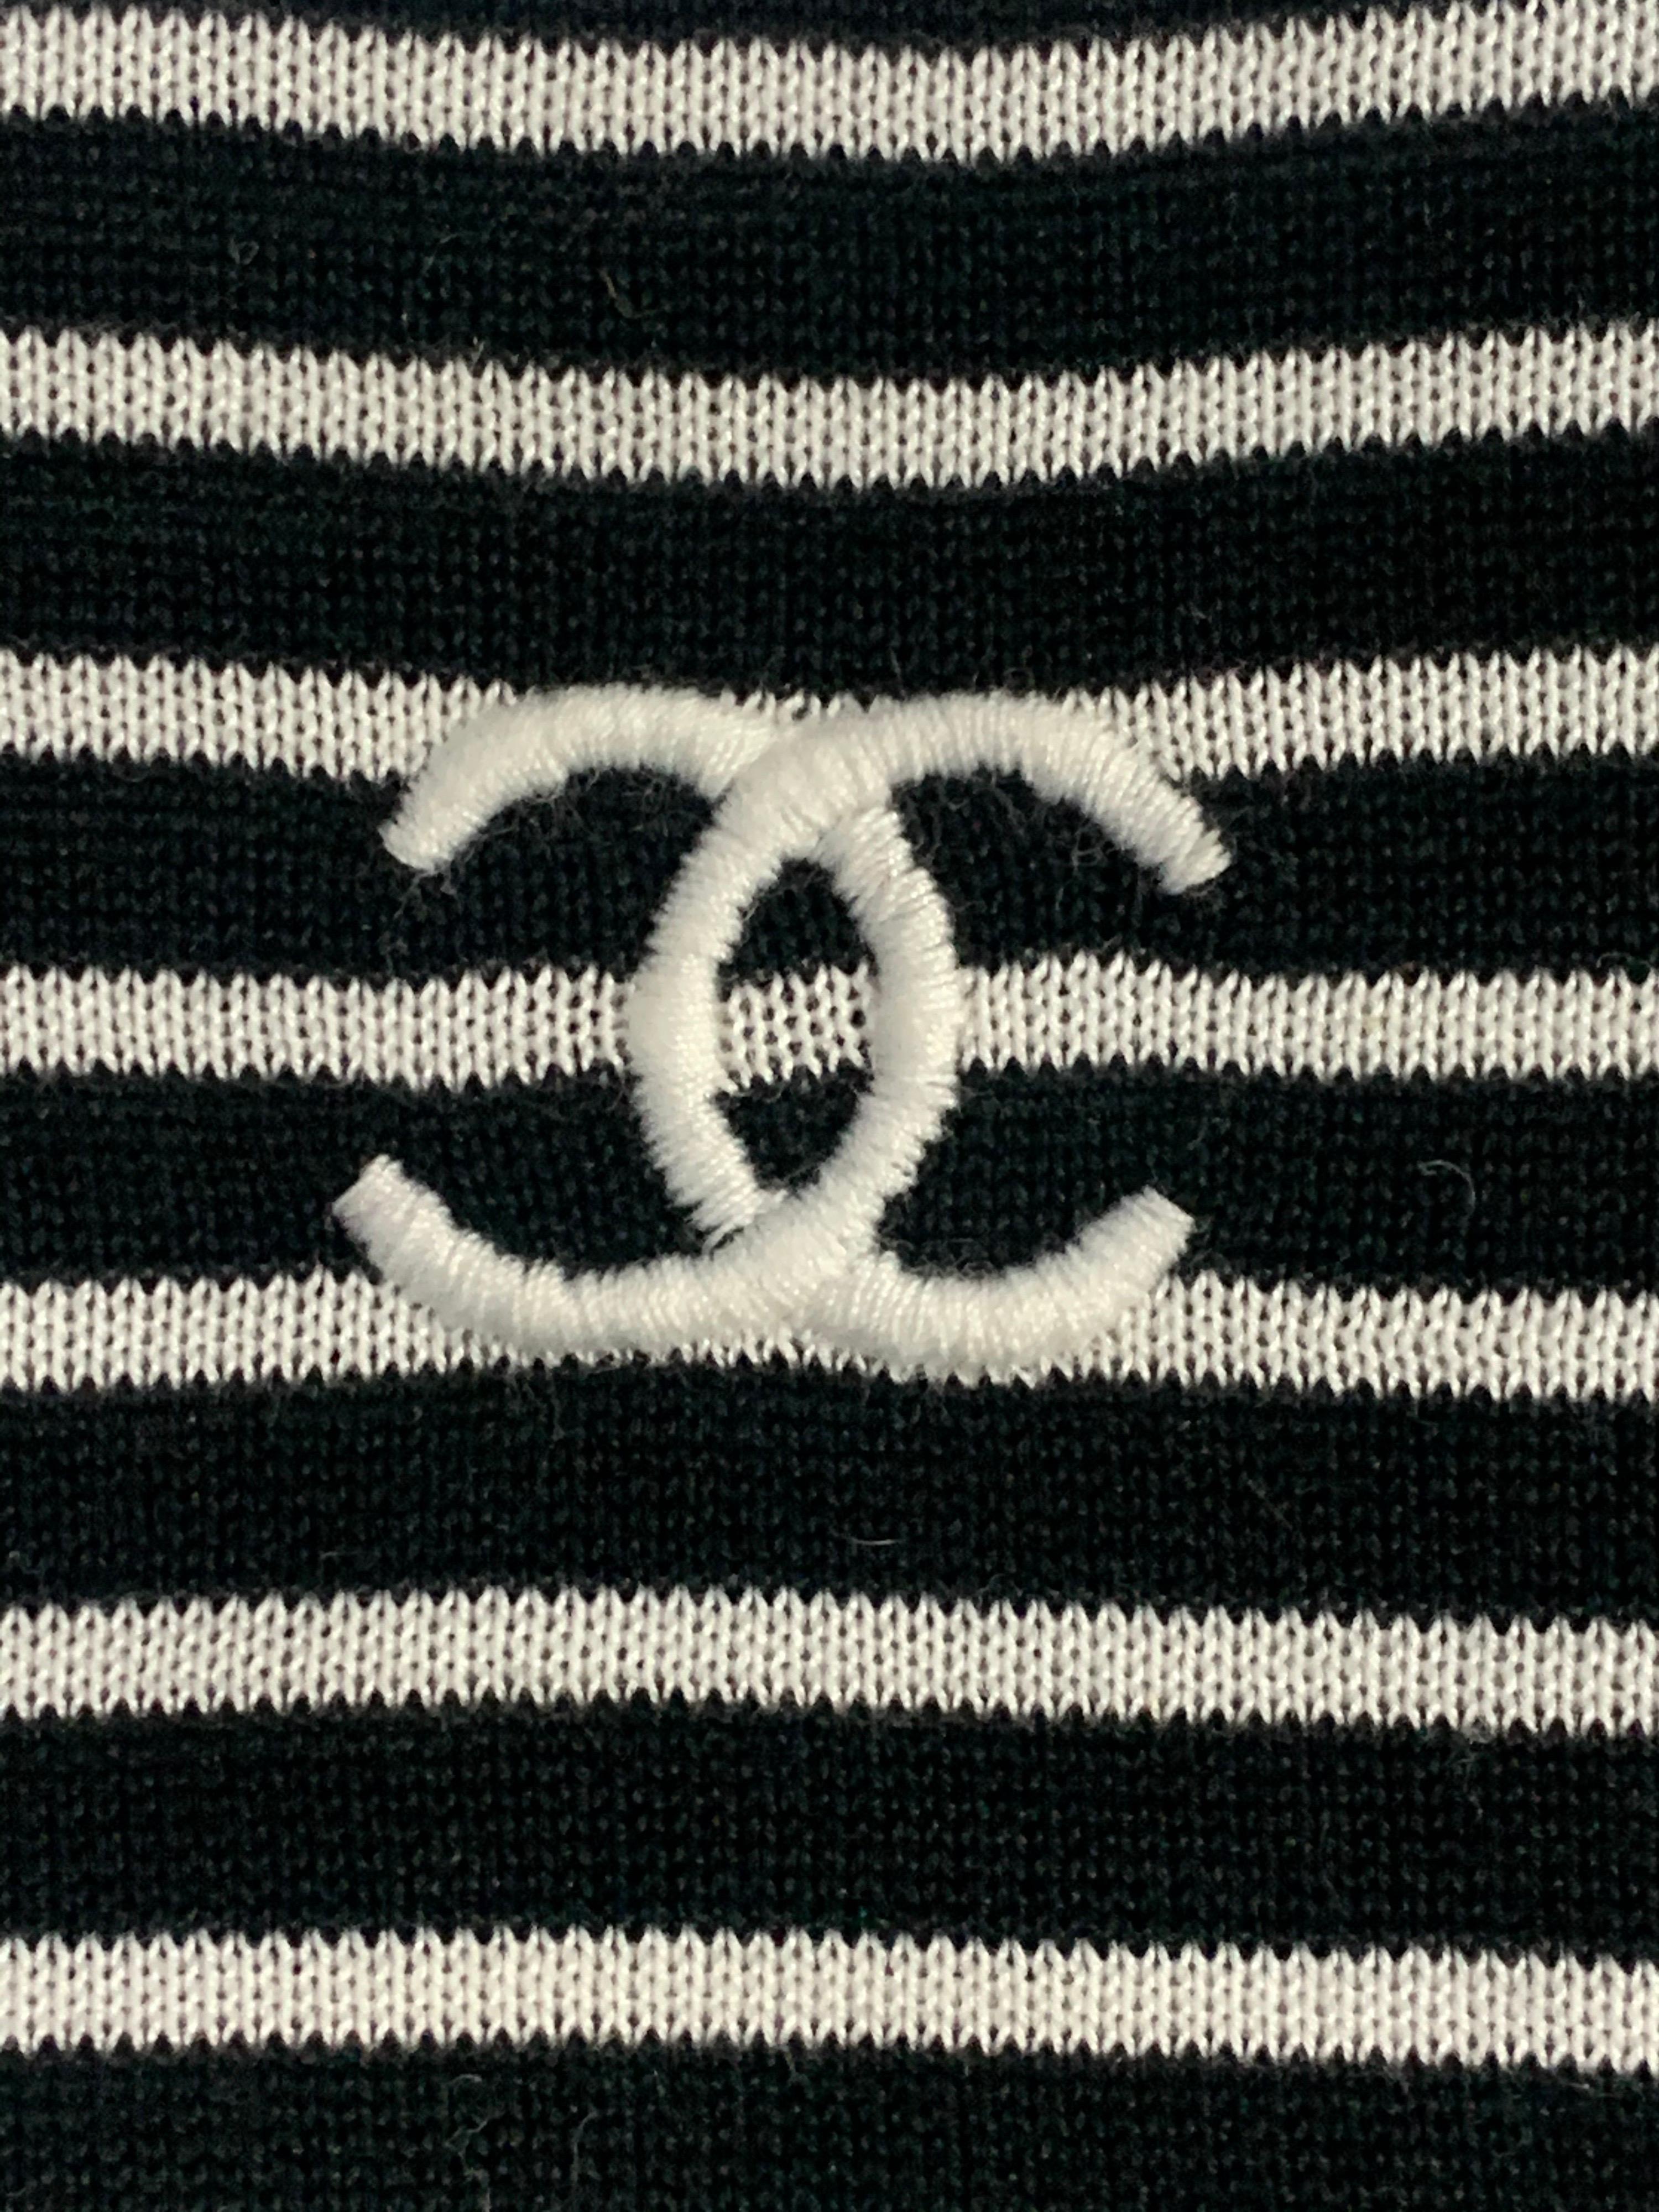 1990s Chanel Black & White Cotton Rib Knit Striped Pullover Top  5